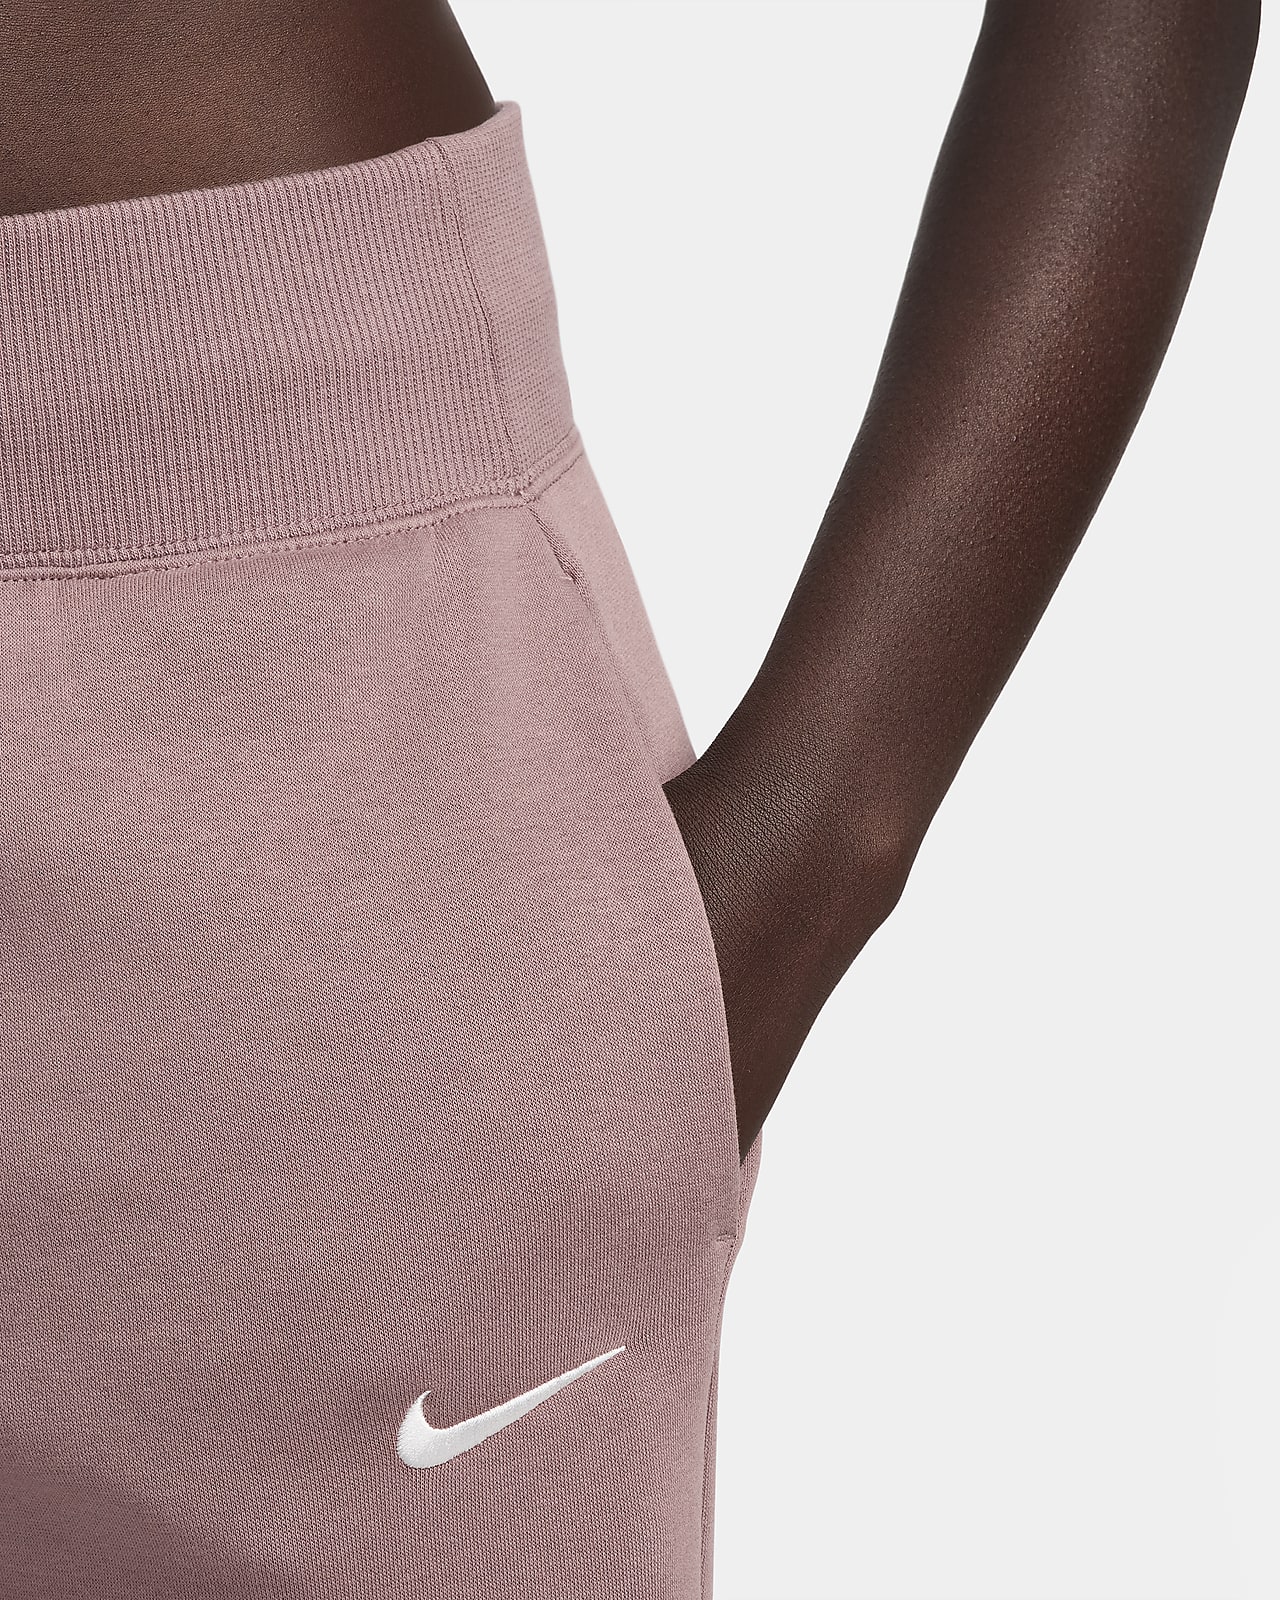 Nike Sportswear Phoenix Fleece Women's High-Waisted Wide-Leg Tracksuit  Bottoms. Nike UK